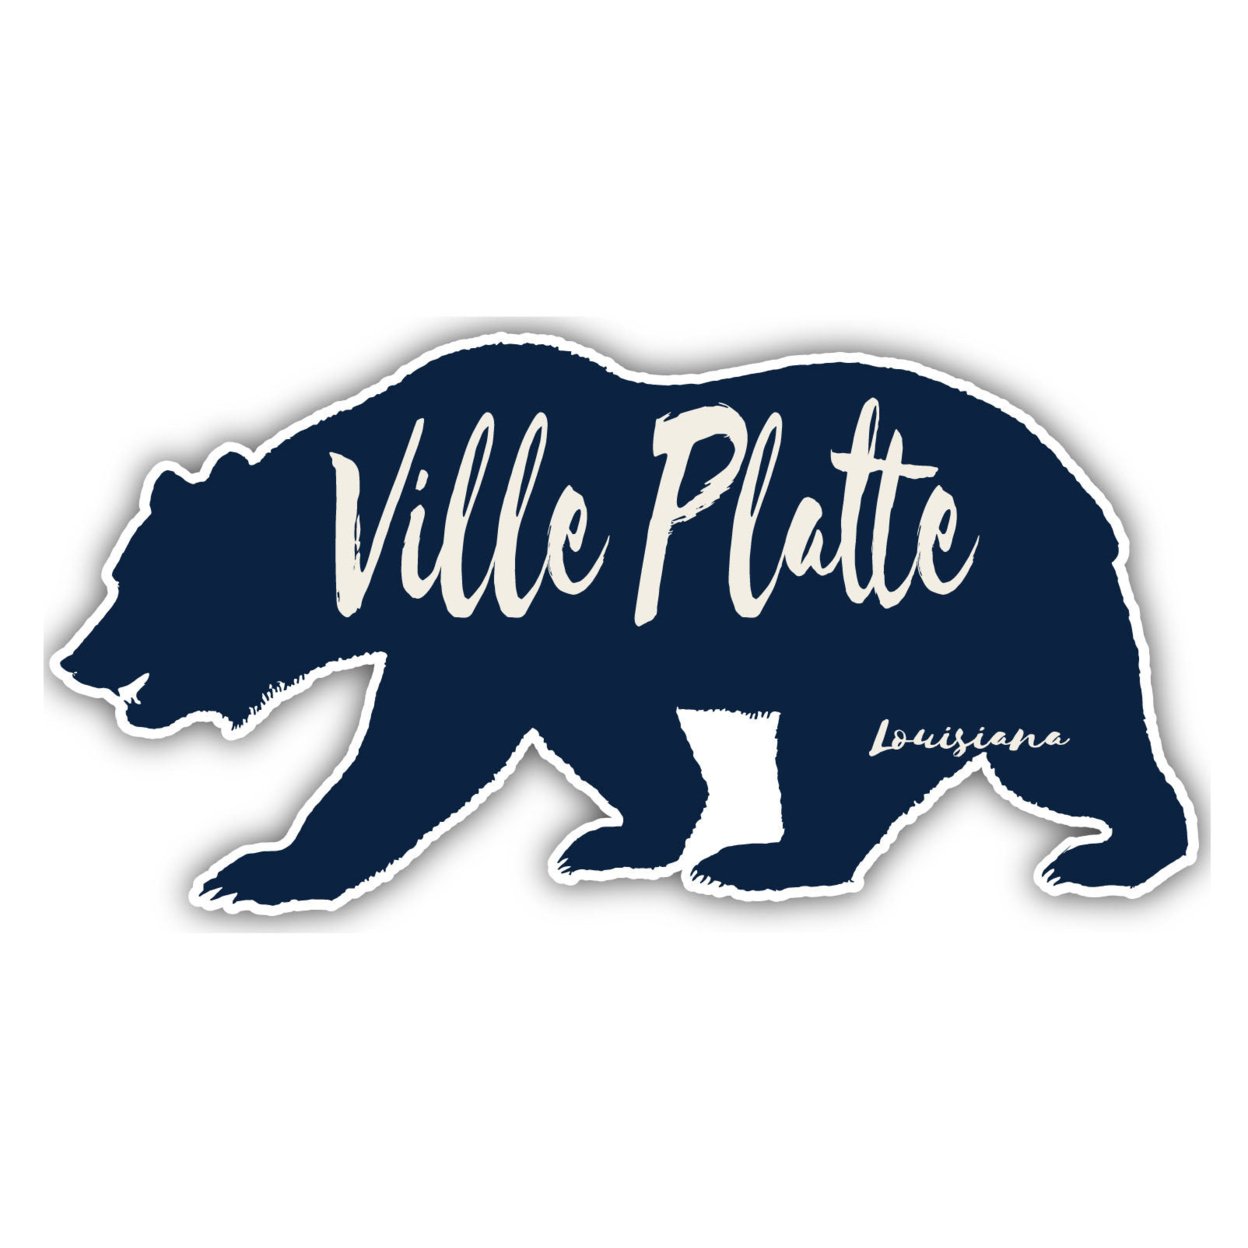 Ville Platte Louisiana Souvenir Decorative Stickers (Choose Theme And Size) - Single Unit, 2-Inch, Bear